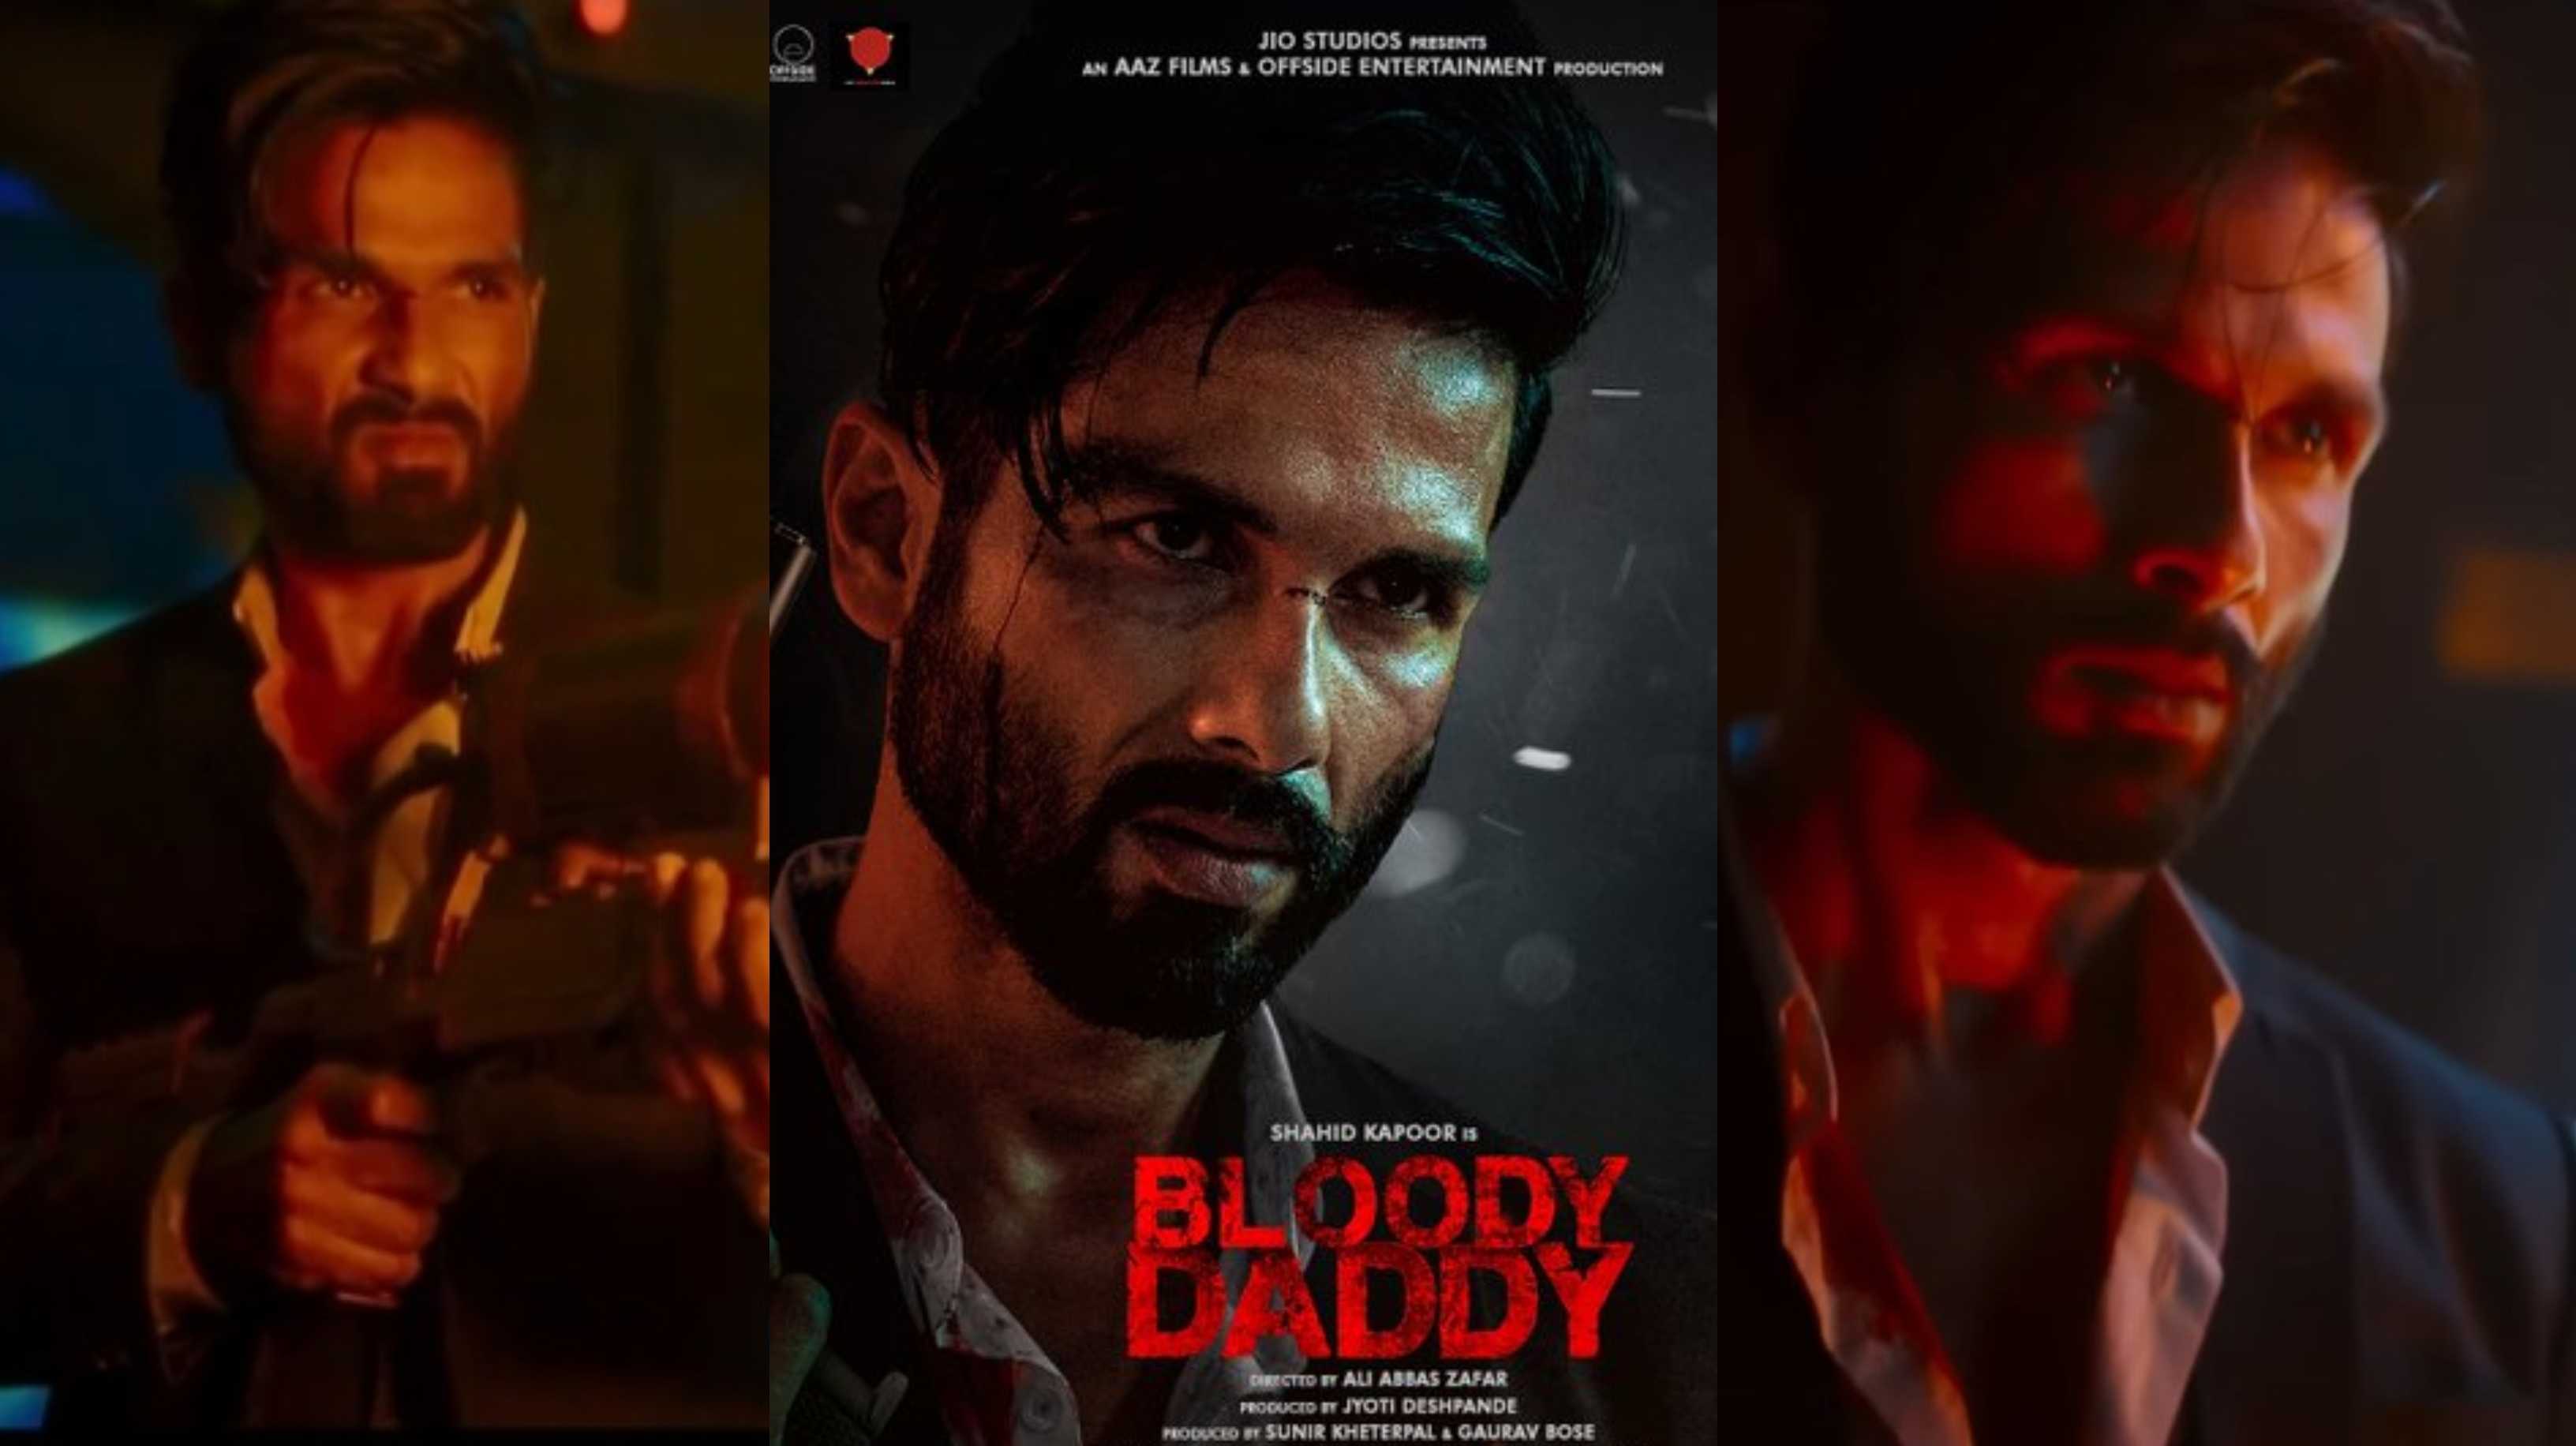 Bloody Daddy Trailer: घिसी हुई कहानी में बस शाहिद कपूर का हेयरस्टाइल दिल खुश करने वाला है